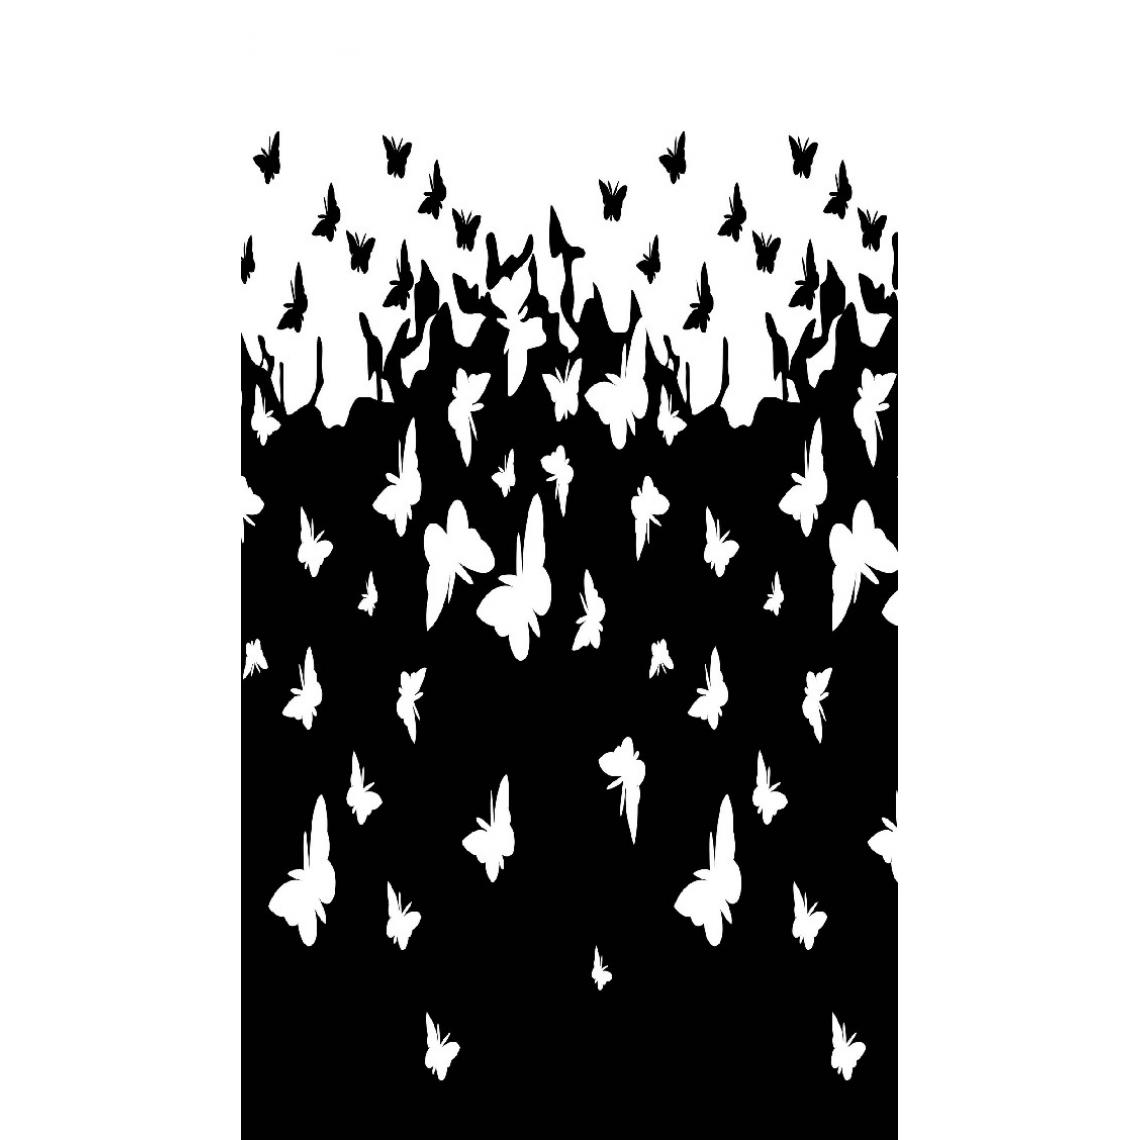 Homemania - HOMEMANIA Tapis Imprimé Butterflies 1 - Animaux - Décoration de Maison - Antidérapant - Pour Salon, séjour, chambre à coucher - Blanc, Noir en Polyester, Coton, 80 x 120 cm - Tapis